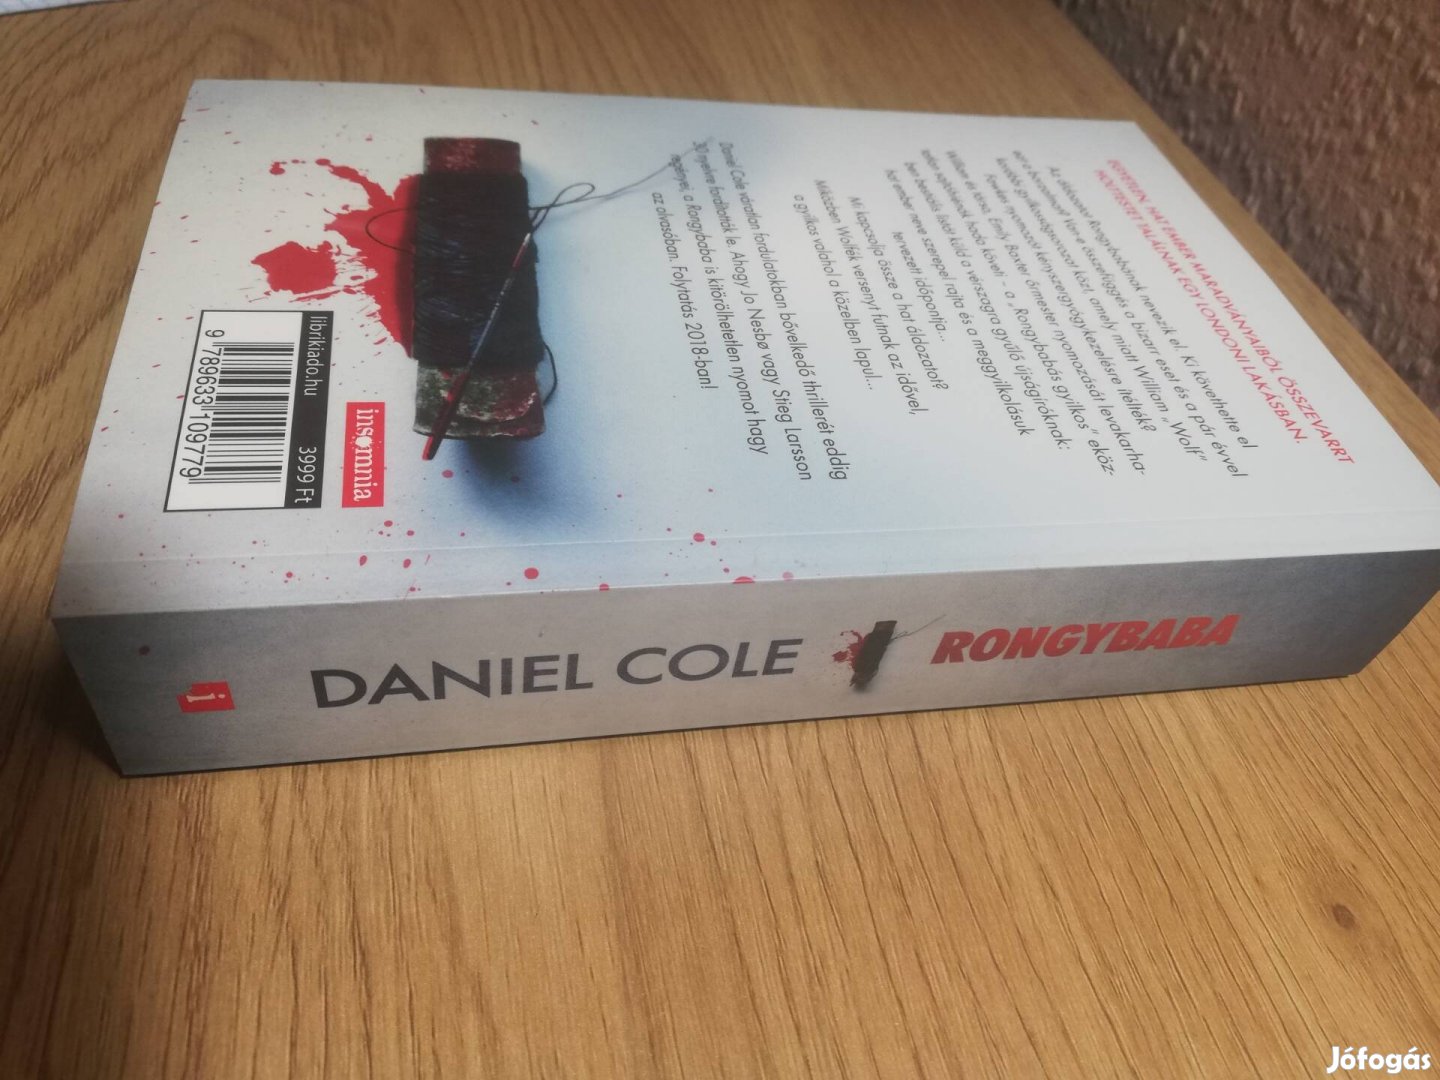 Daniel Cole : Rongybaba 